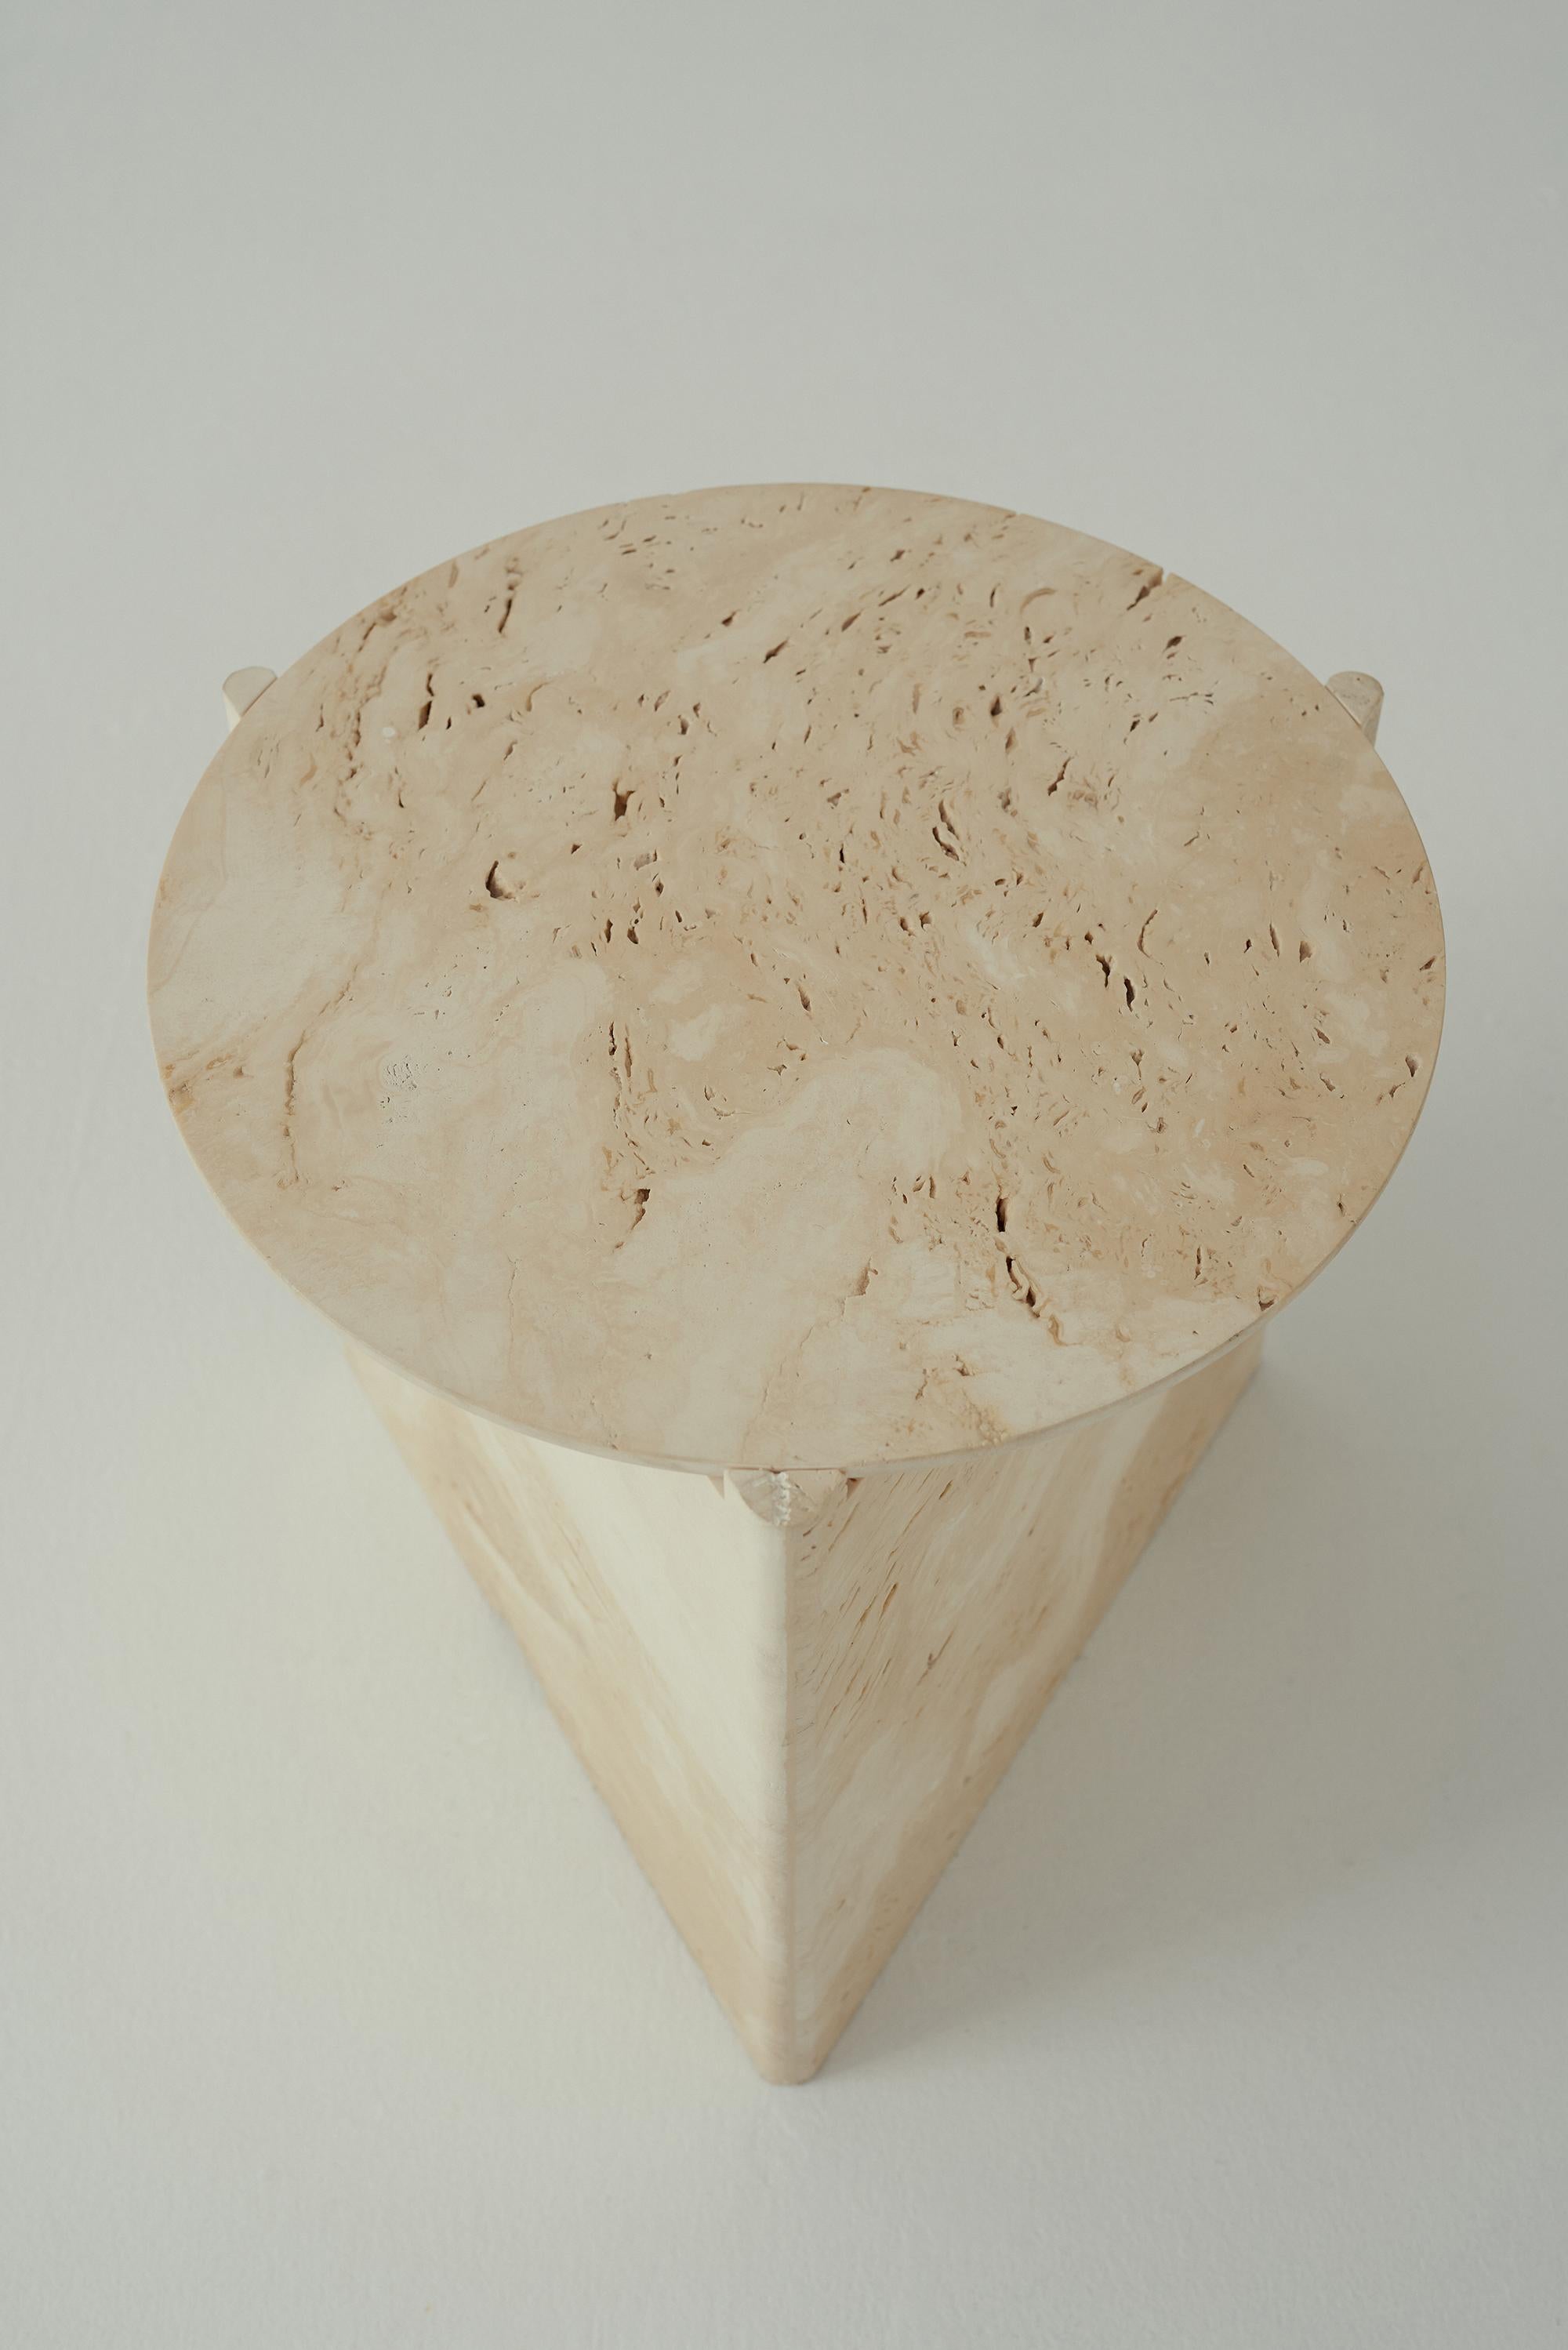 Der Portsea Beistelltisch zelebriert elementare Formen und hochwertige Handwerkskunst; ein
Neuinterpretation des Malibu Beistelltischs aus gemasertem Naturstein.

Travertin verleiht den runden und dreieckigen Formen des Tisches eine taktile